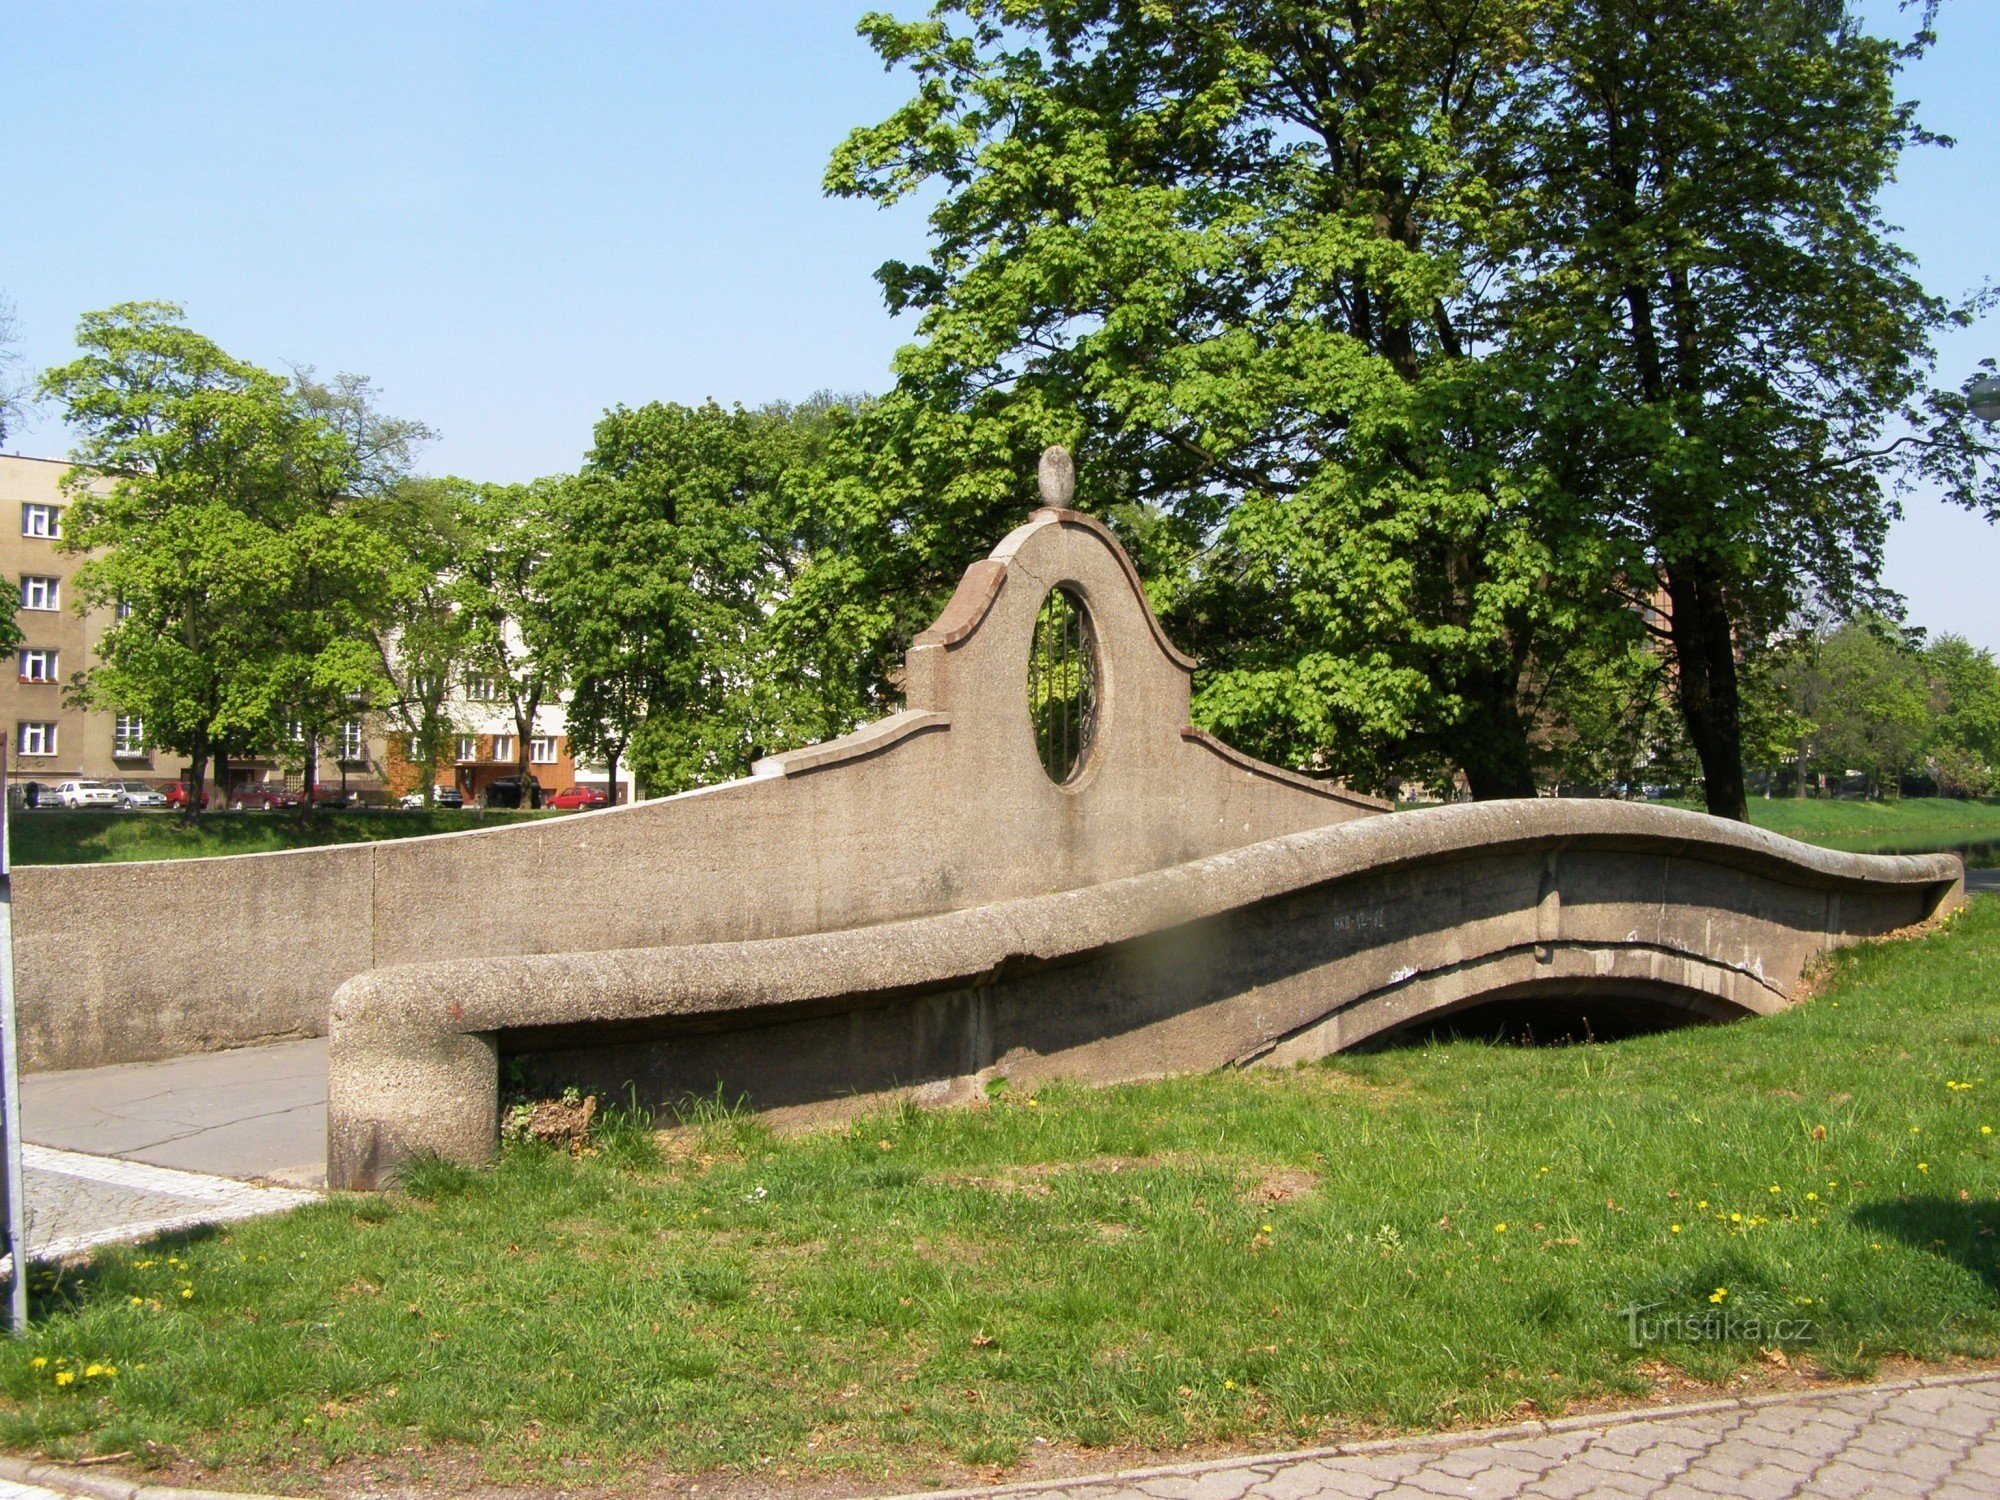 Градец Кралове - мост через Пилетицкий ручей